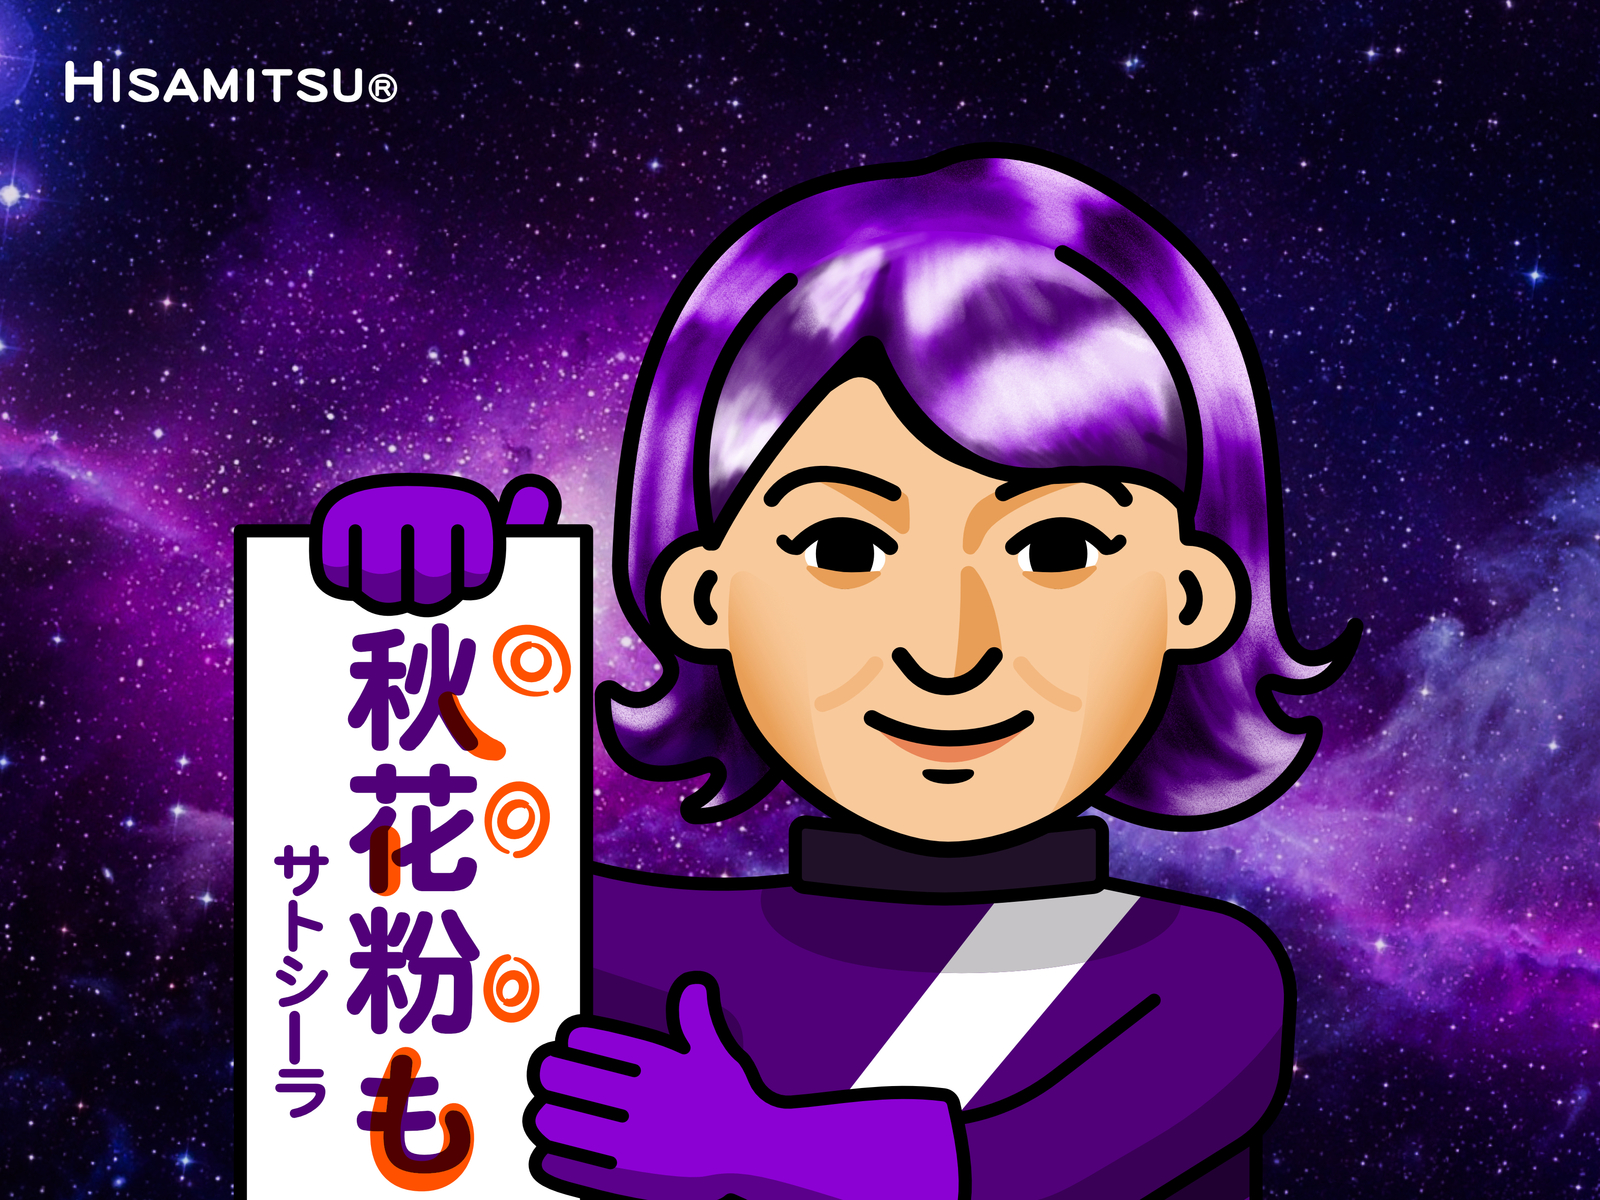 大野智 CM affinity designer arashi avatar character character design design graphic design hisamitsu illustration japan 大野智 嵐